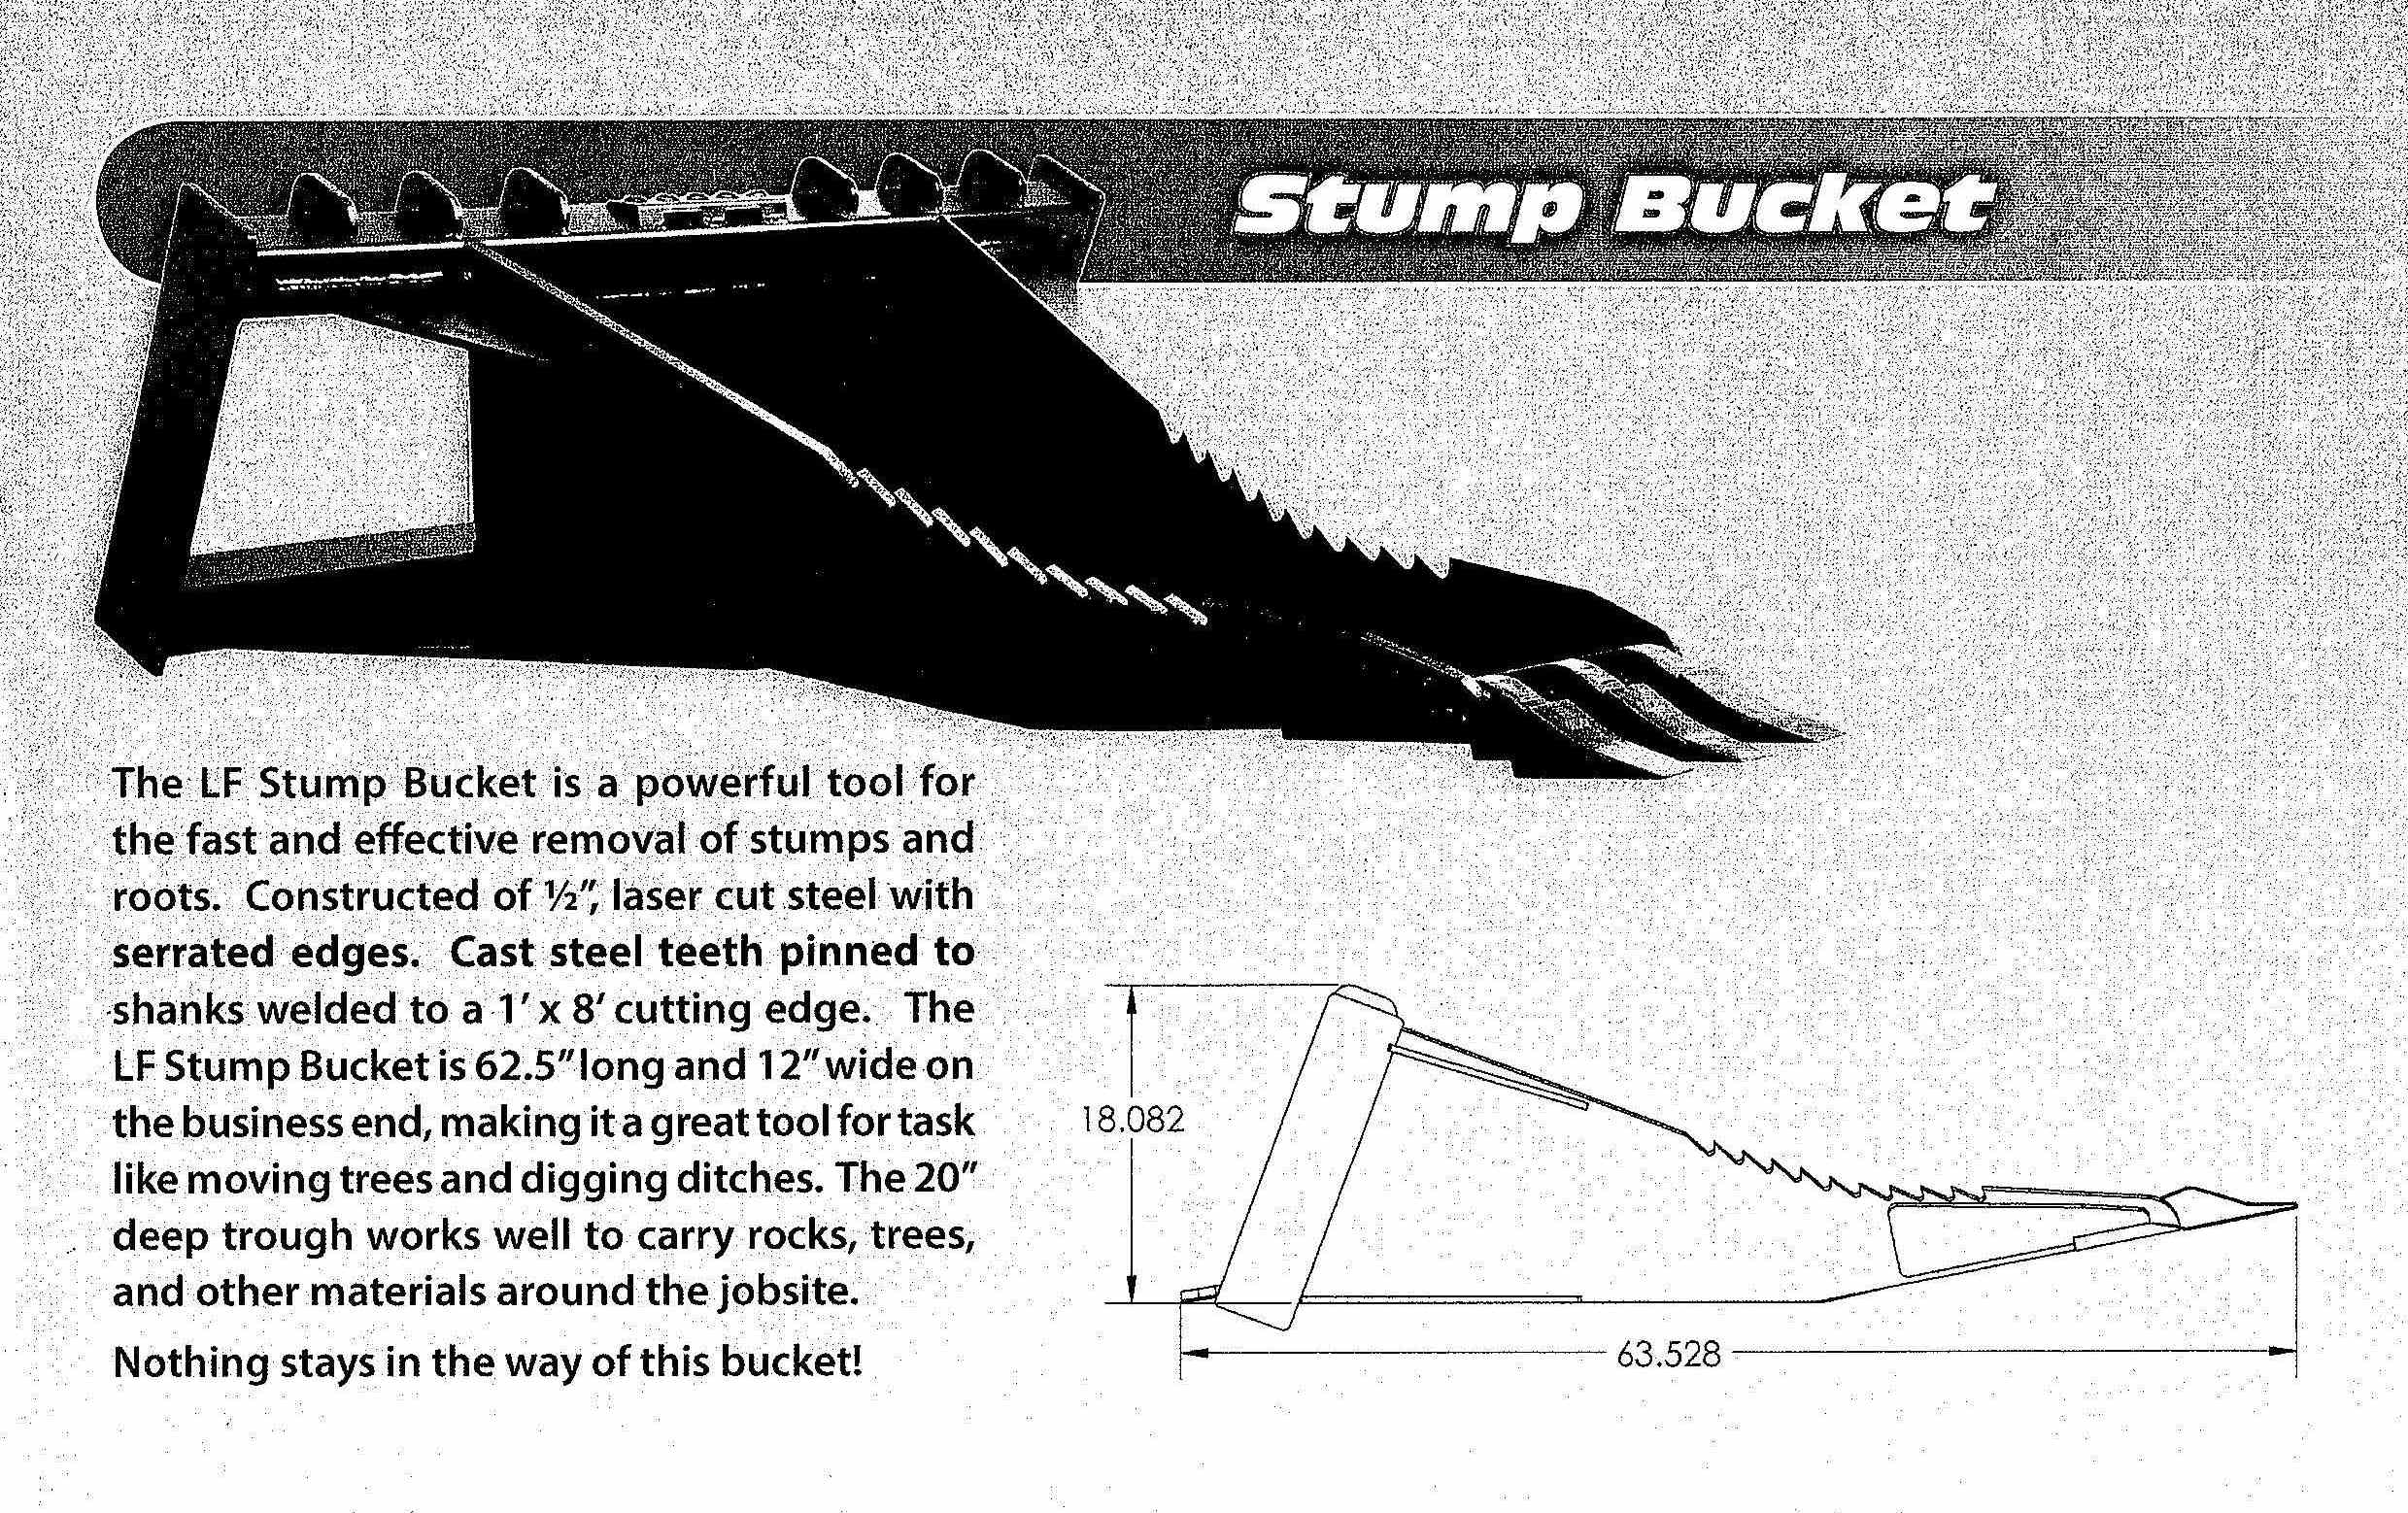 Standard Stump Bucket